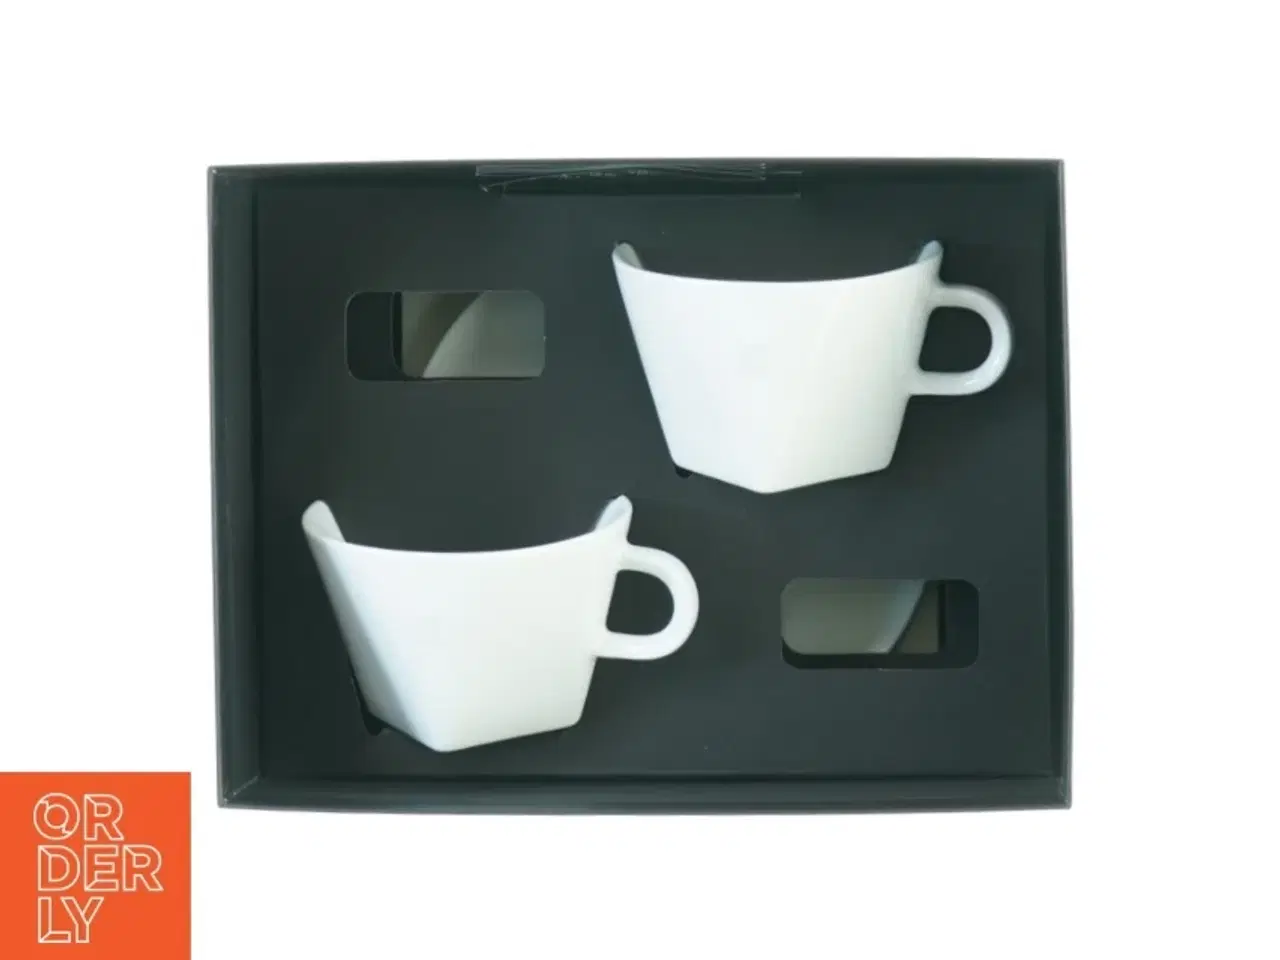 Billede 1 - Nespresso kopper og tallerkner fra Nespresso (str. 23 x 17 cm)